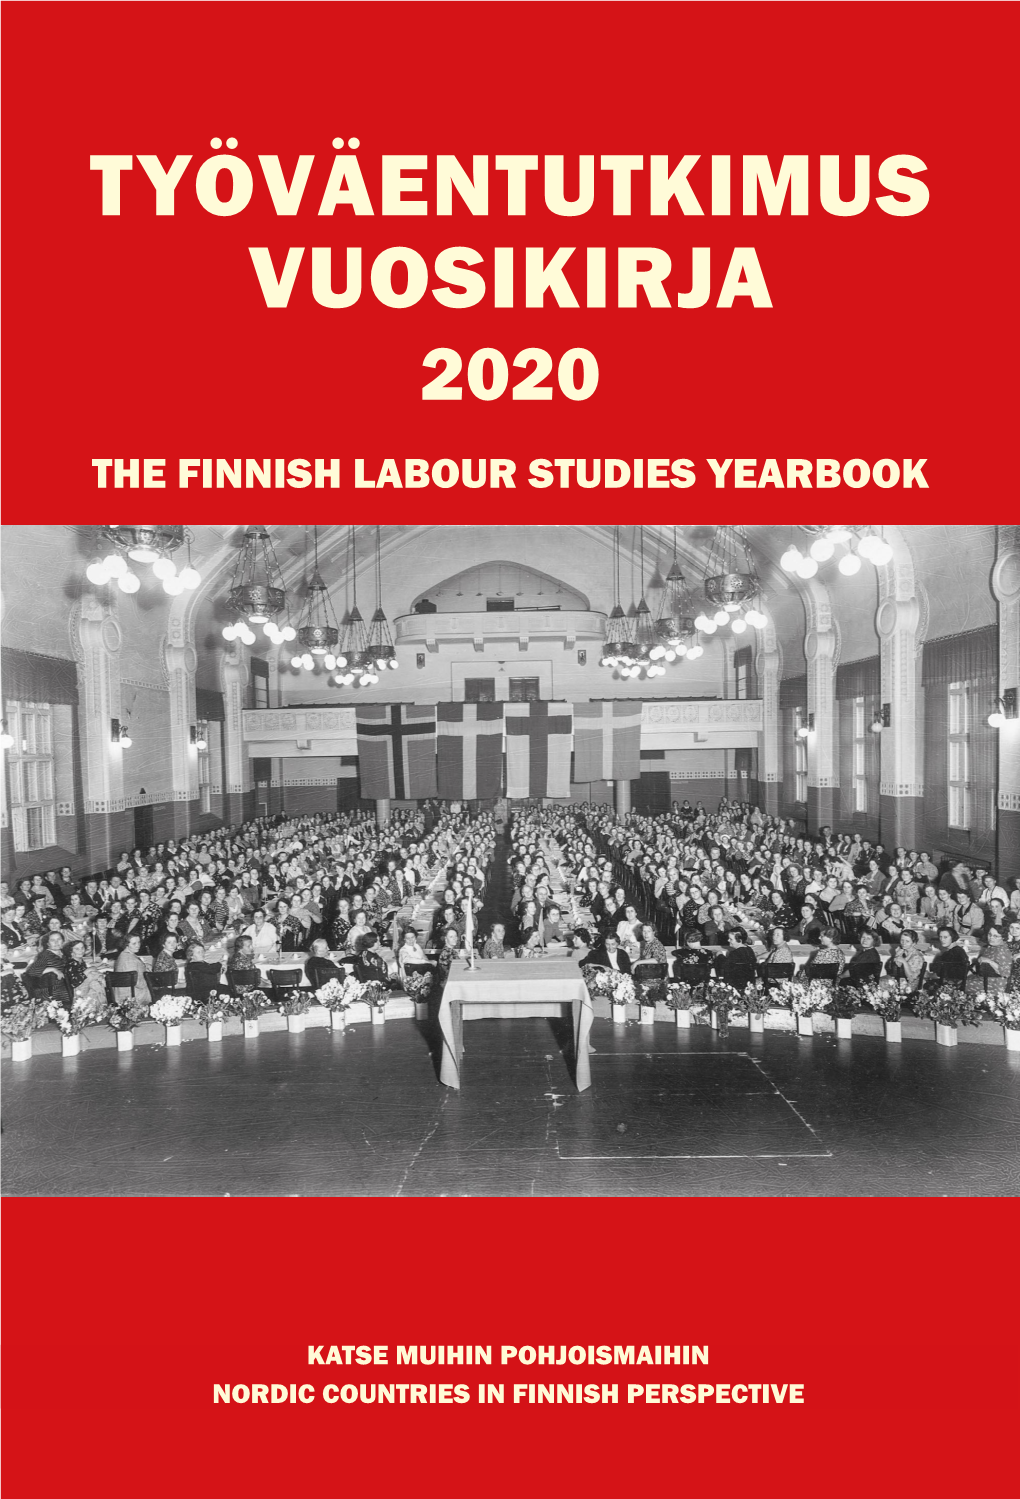 Työväentutkimus Vuosikirja 2020 the Finnish Labour Studies Yearbook